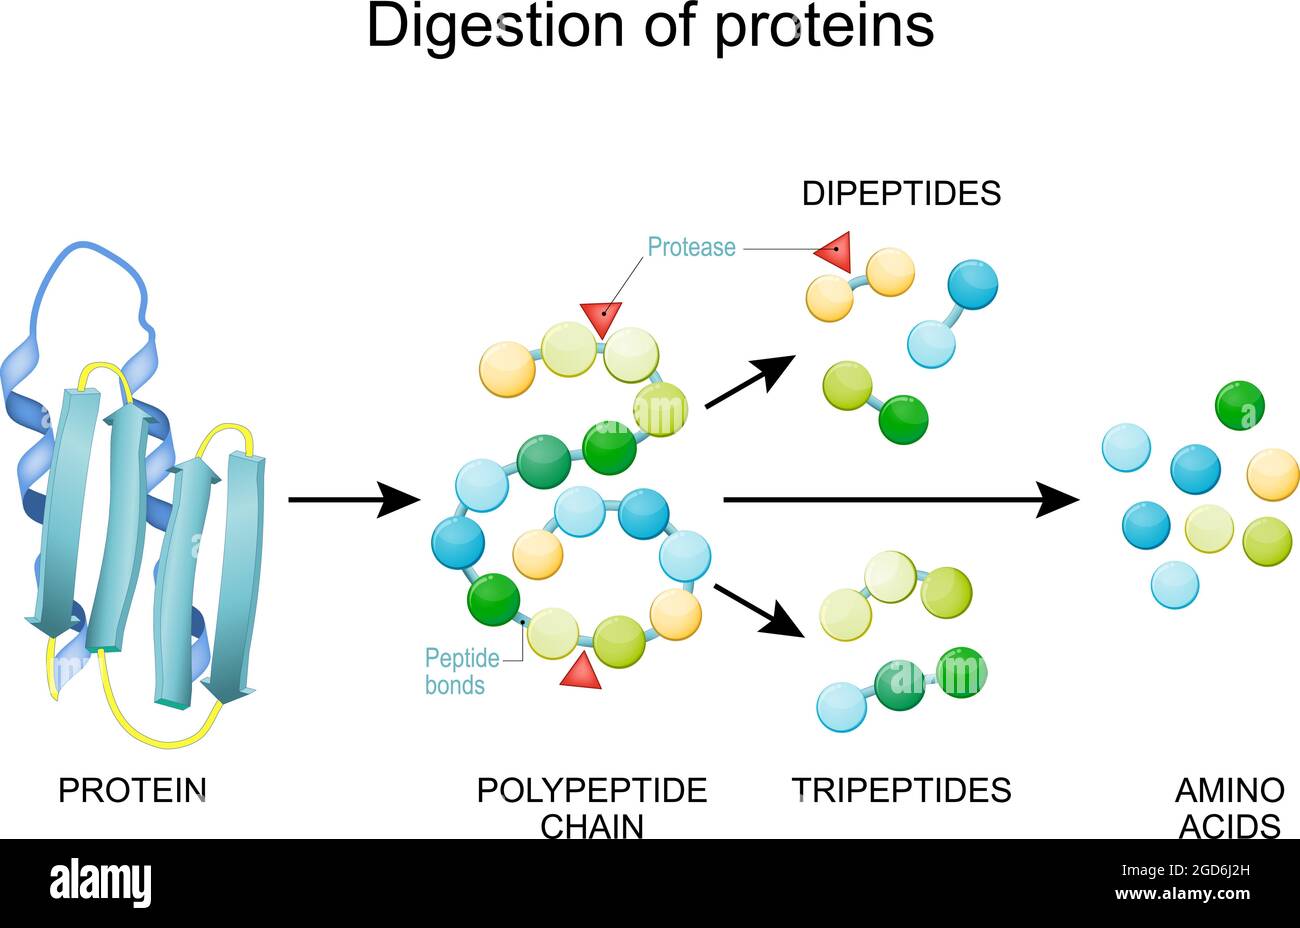 Digestion des protéines. Les enzymes (protéases et peptidases) sont la digestion décompose la protéine en chaînes peptidiques plus petites et en acides aminés uniques Illustration de Vecteur